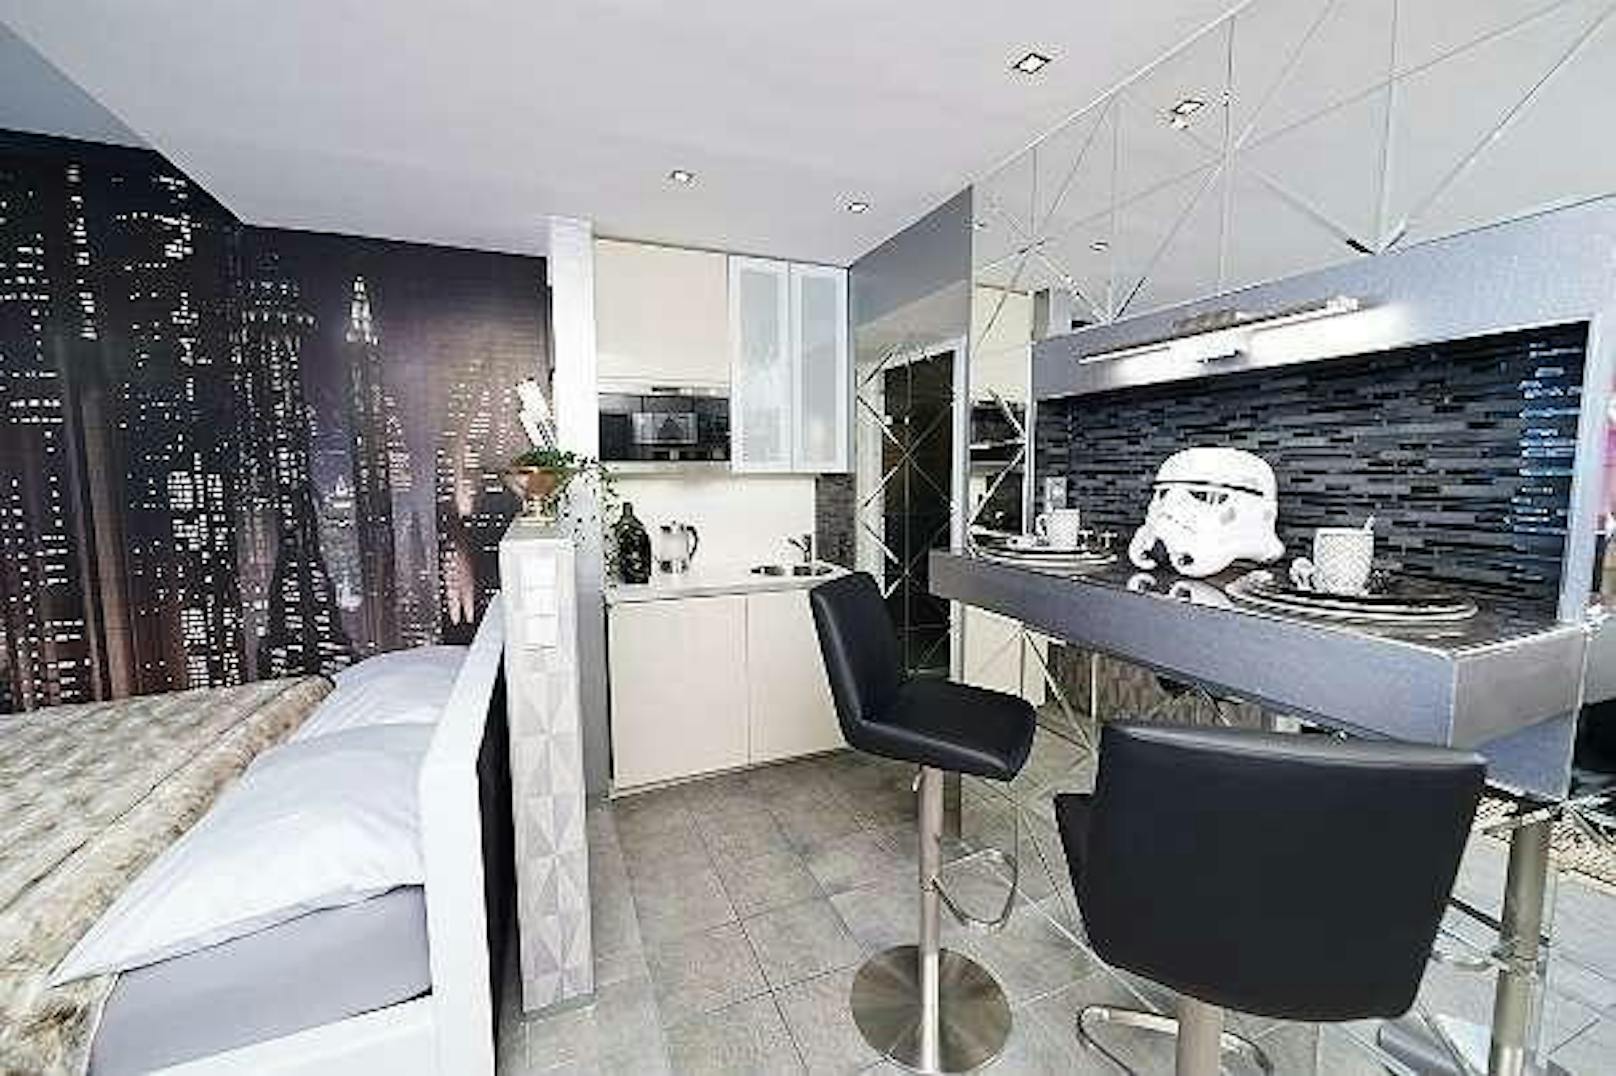 Die Wohnung von Michael K. ist ein echtes Schmankerl für alle "Star Wars"-Fans.